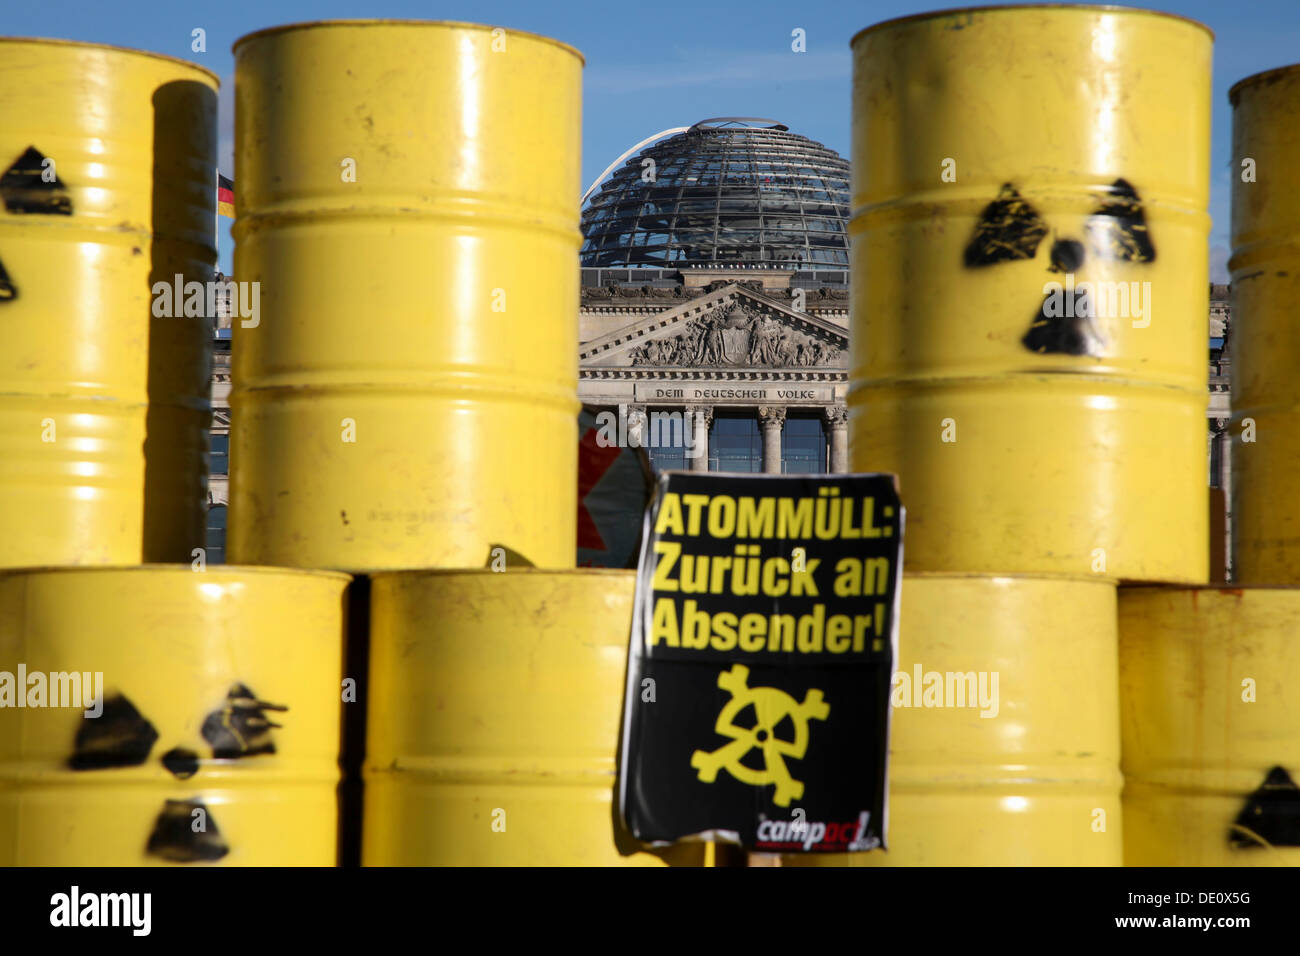 Signo, las letras "an den Absender Atommuell zurueck', 'alemán para los residuos atómicos - Devolver al remitente", una pila de desechos nucleares Foto de stock